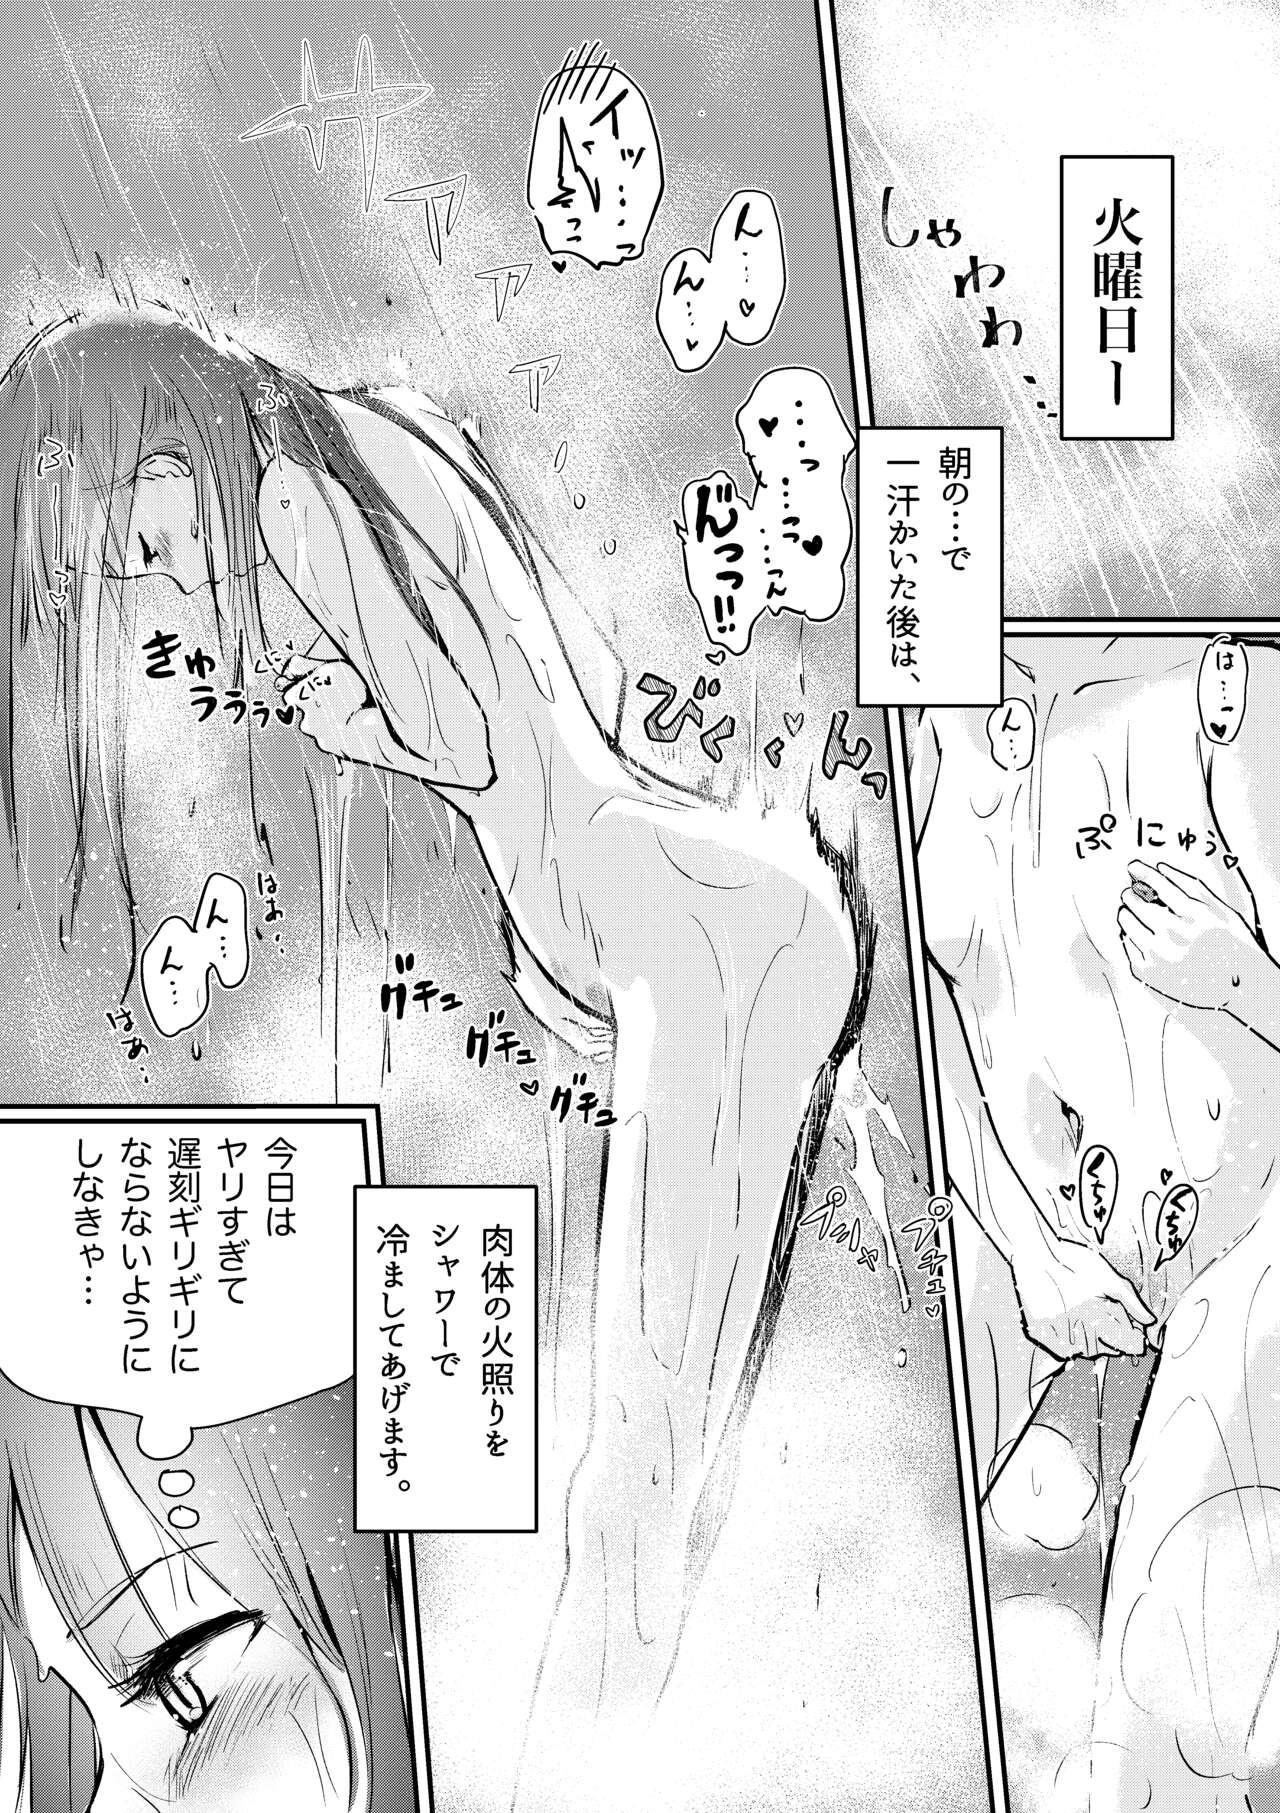 Shitanaga-chan no Nichijou Onanie Life 2 Isshuukan Report Kanzenban 5